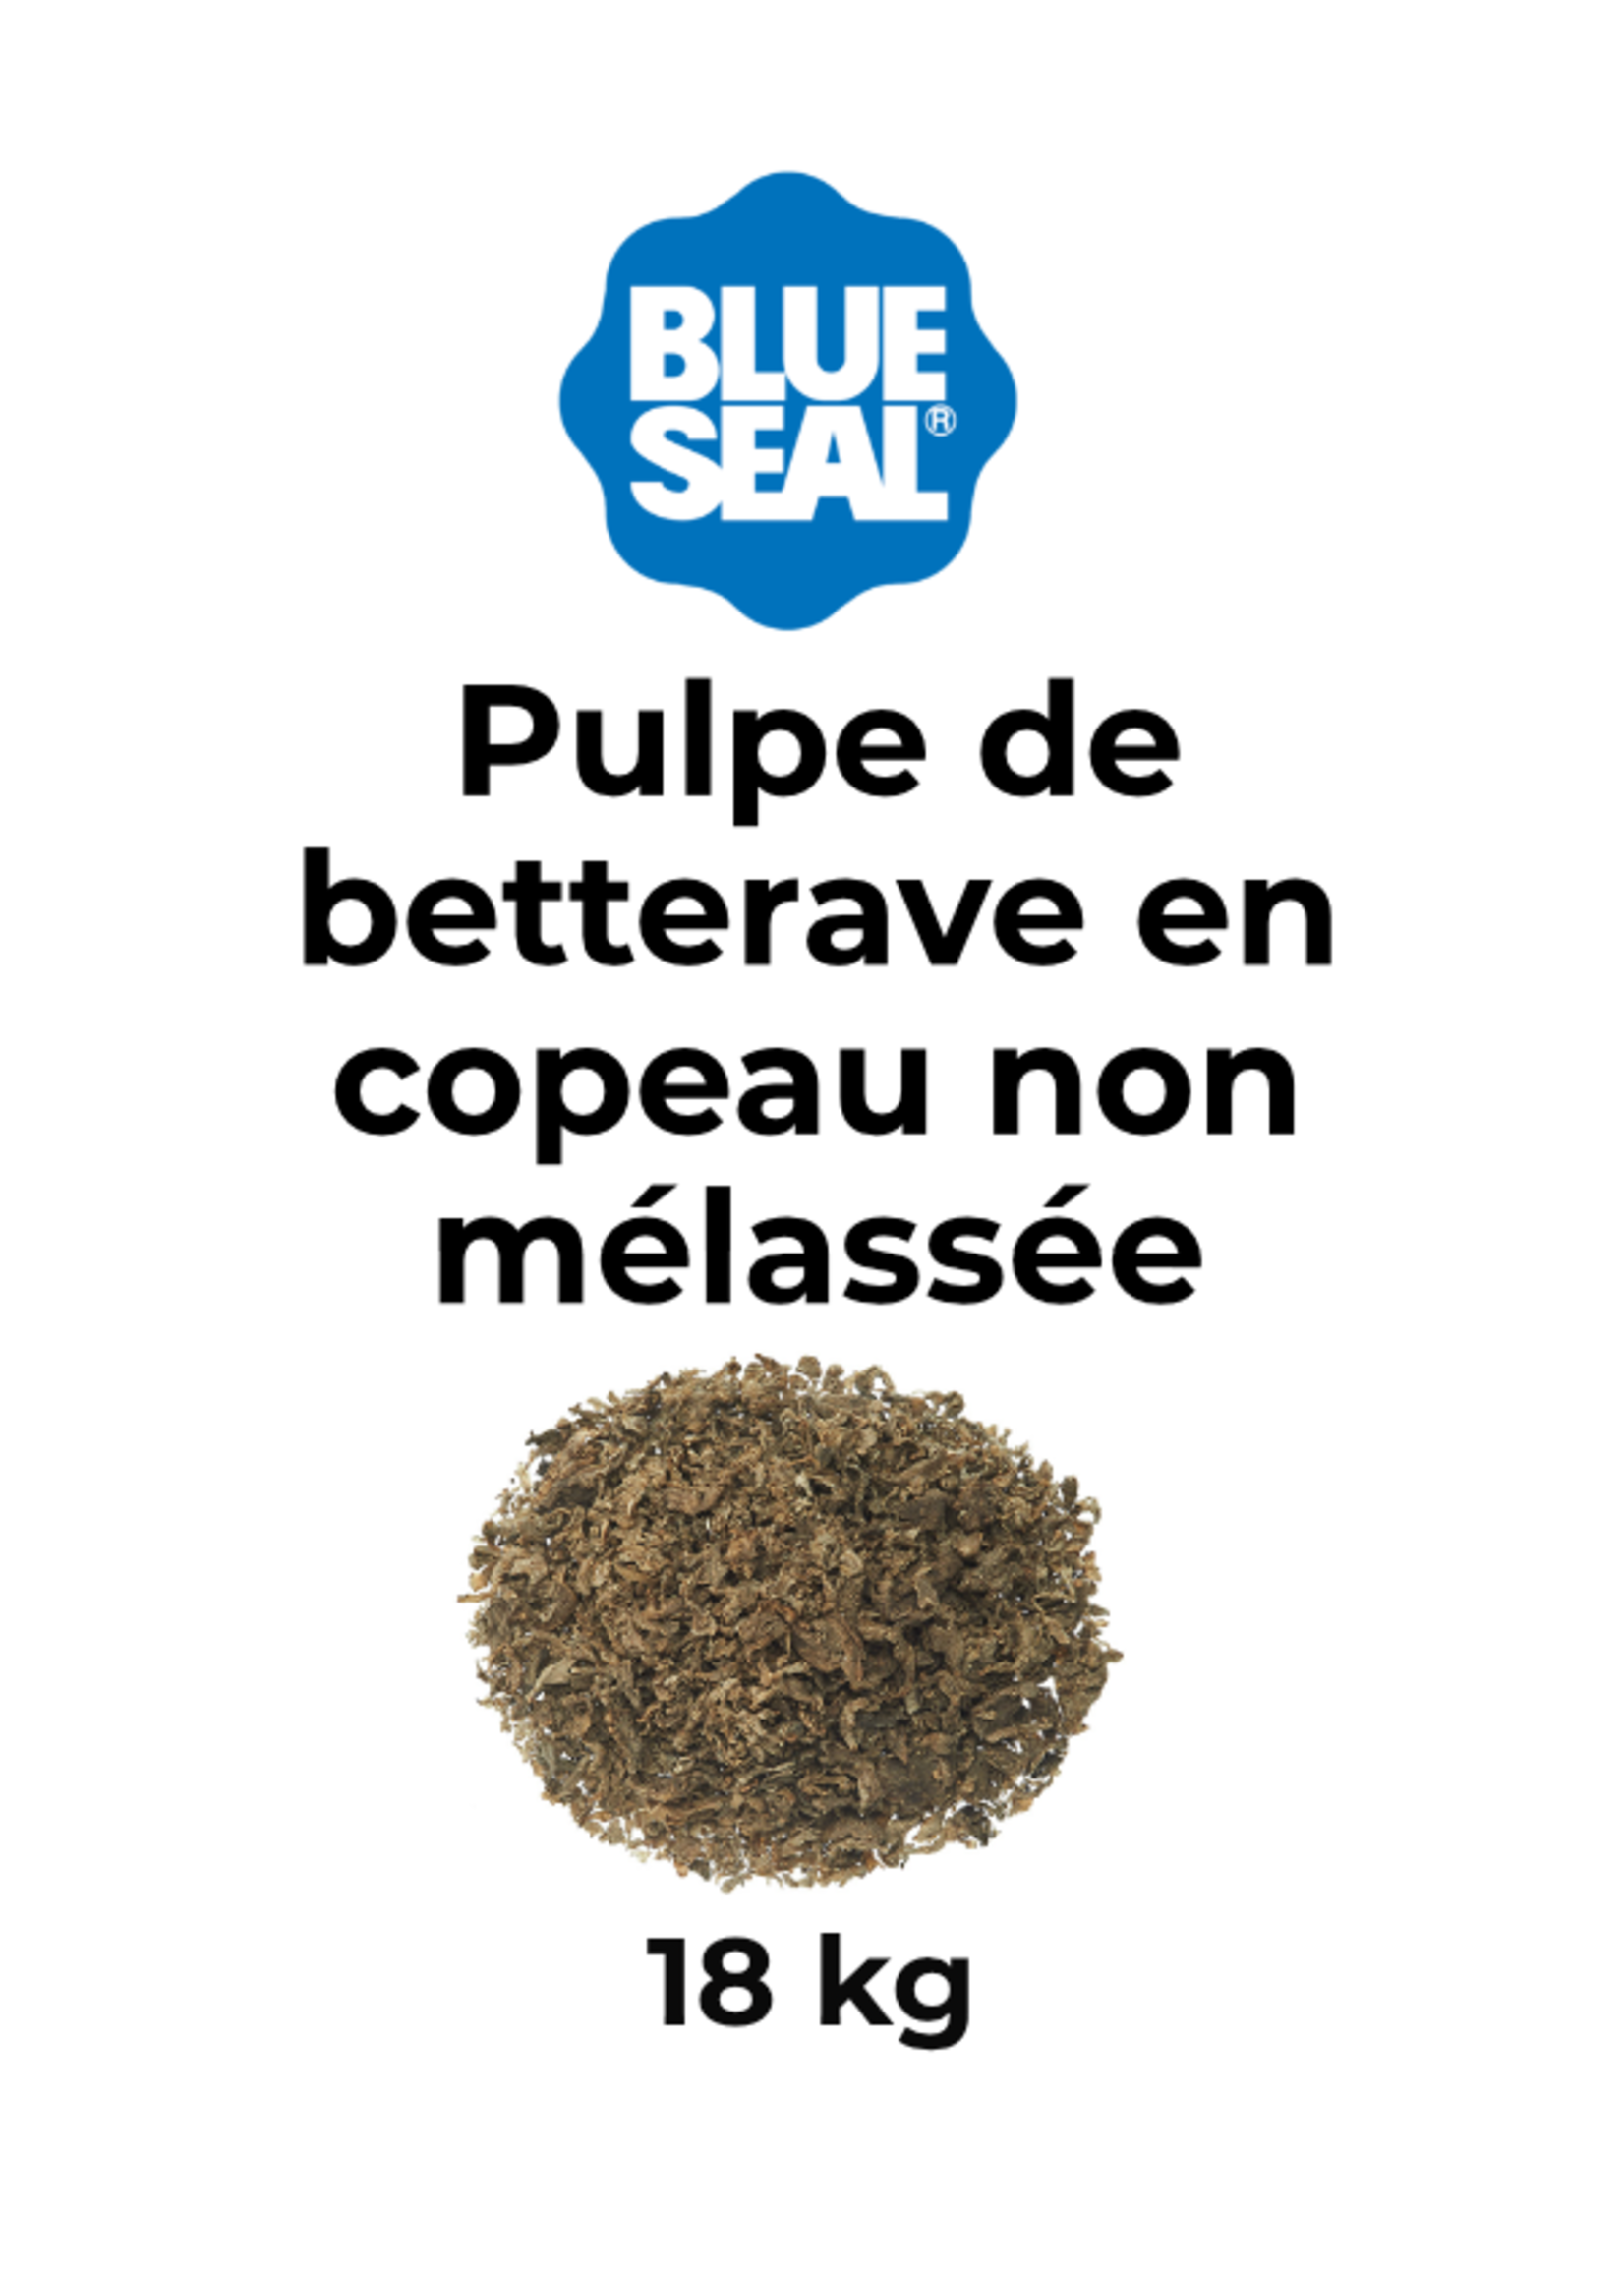 Blue Seal BS Pulpe de Betterave shred non melassé 15kg